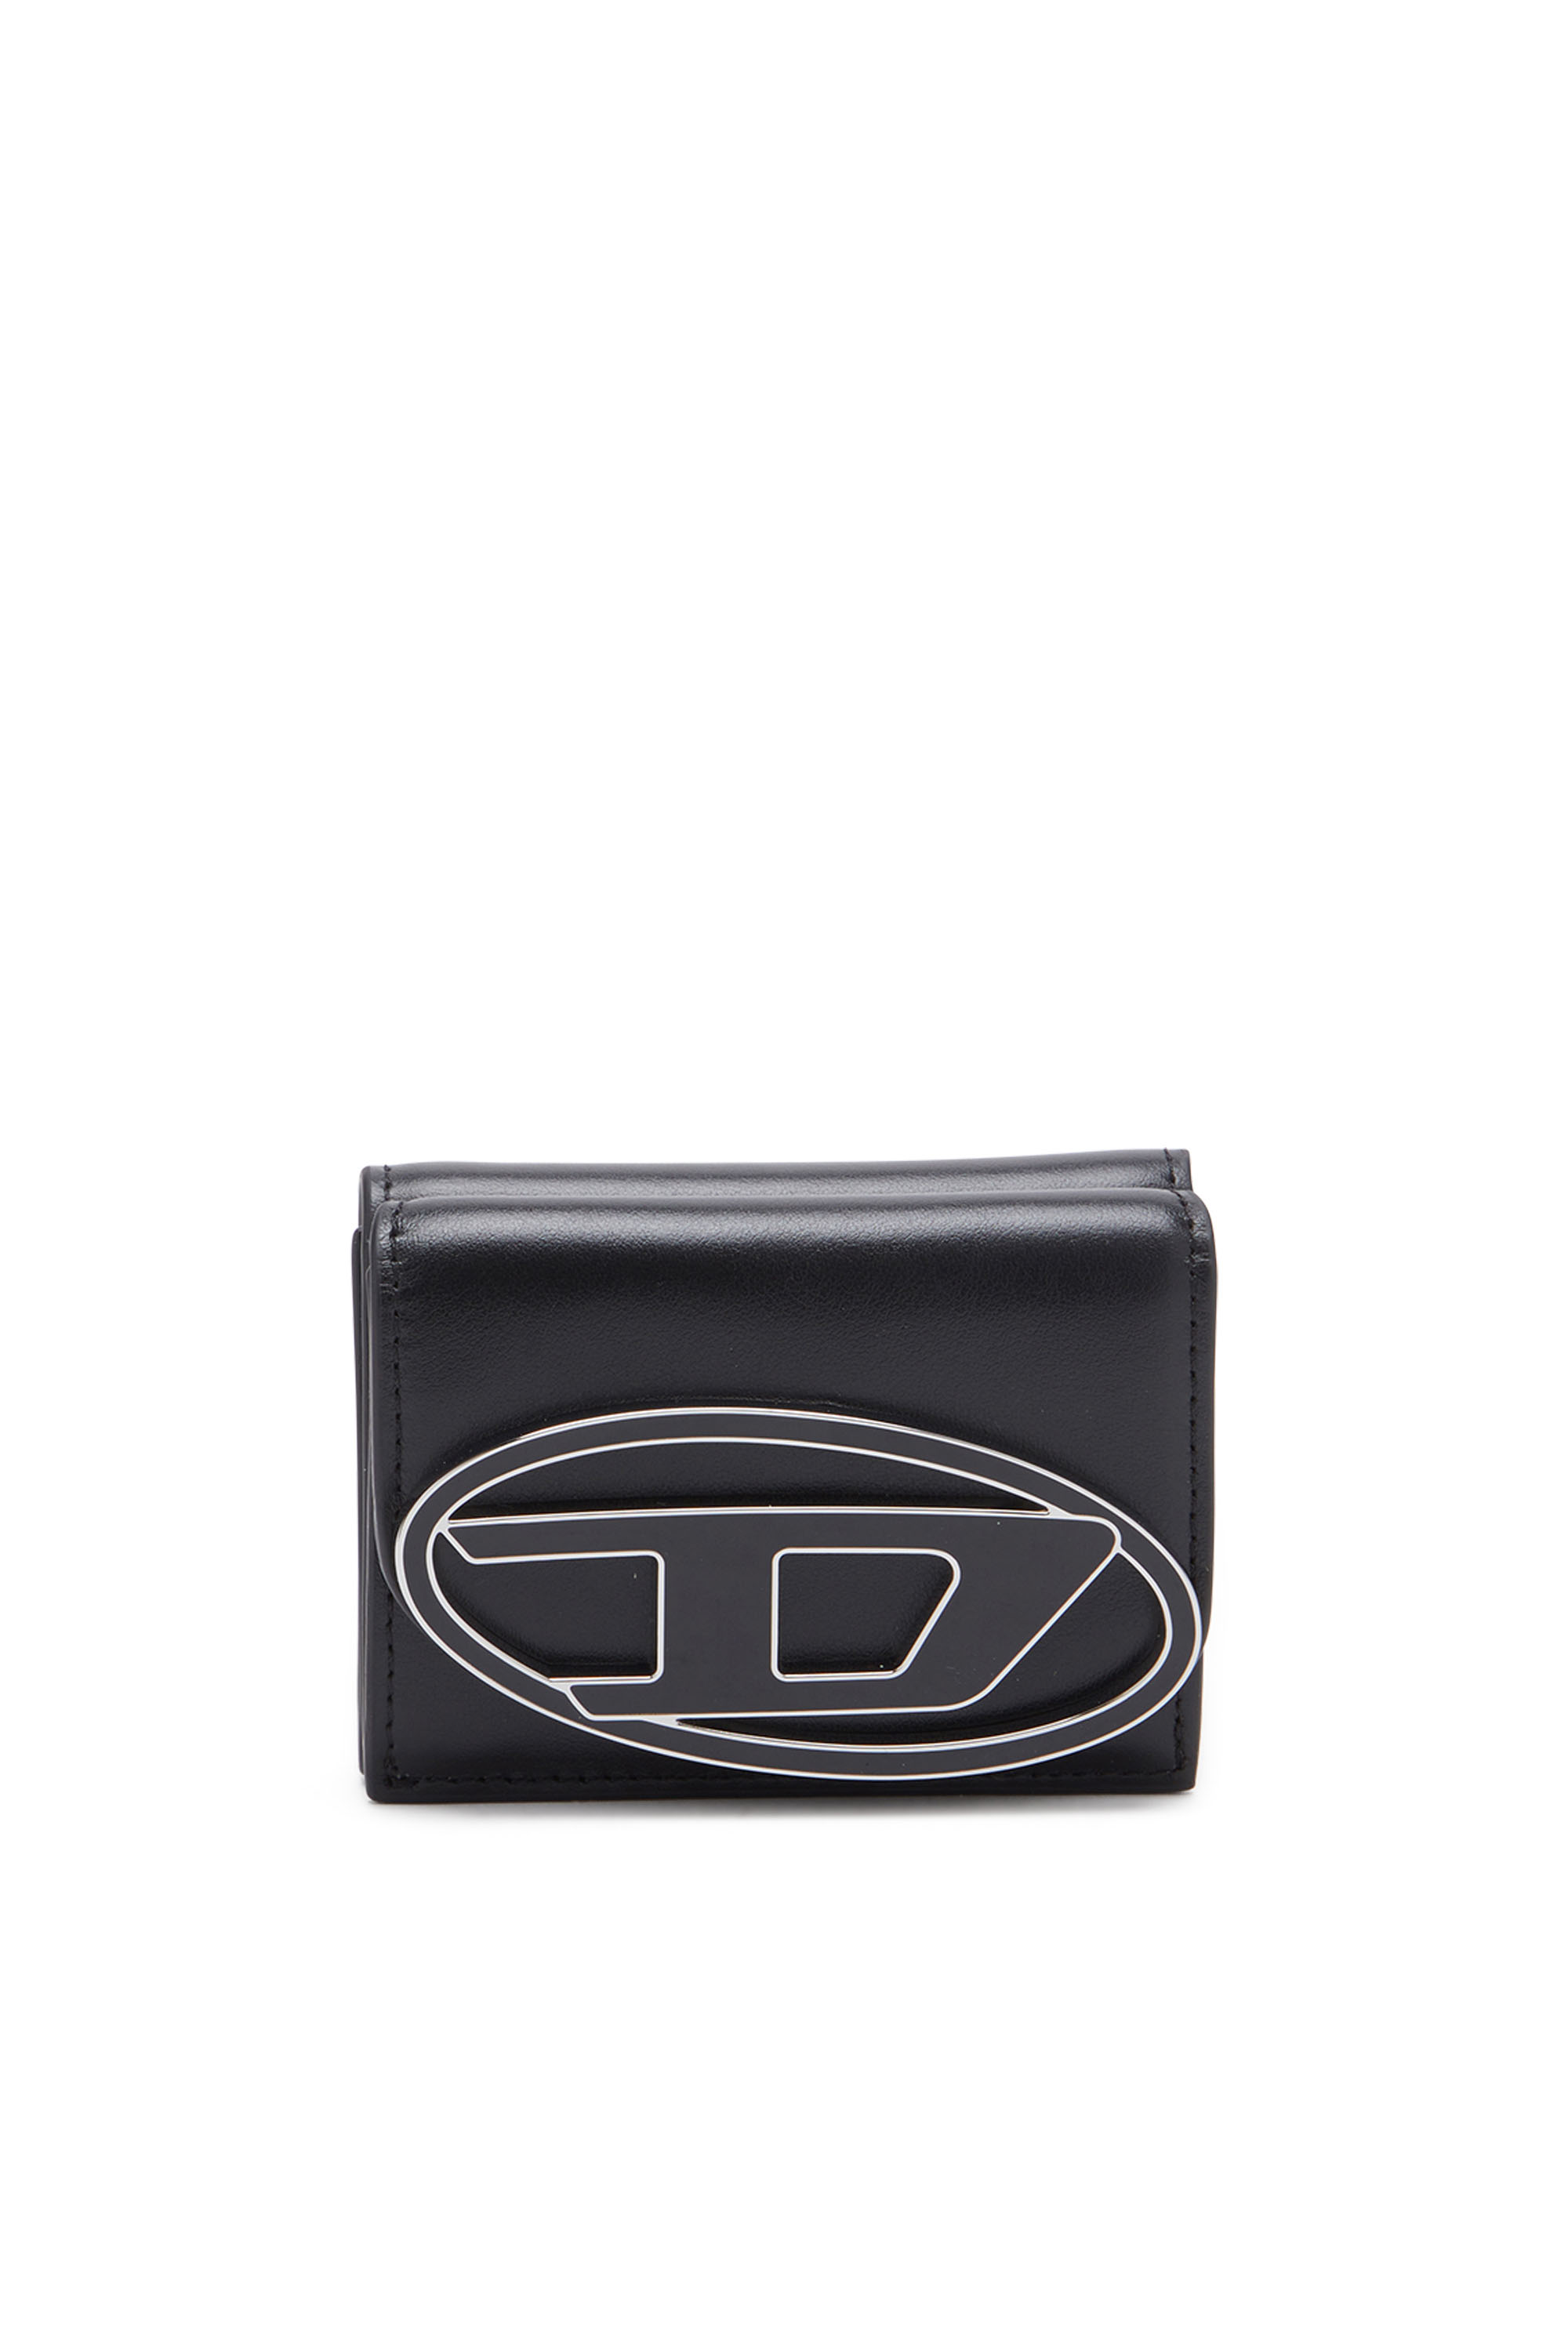 Diesel - Tri-fold wallet in leather - Small Wallets - Woman - Black